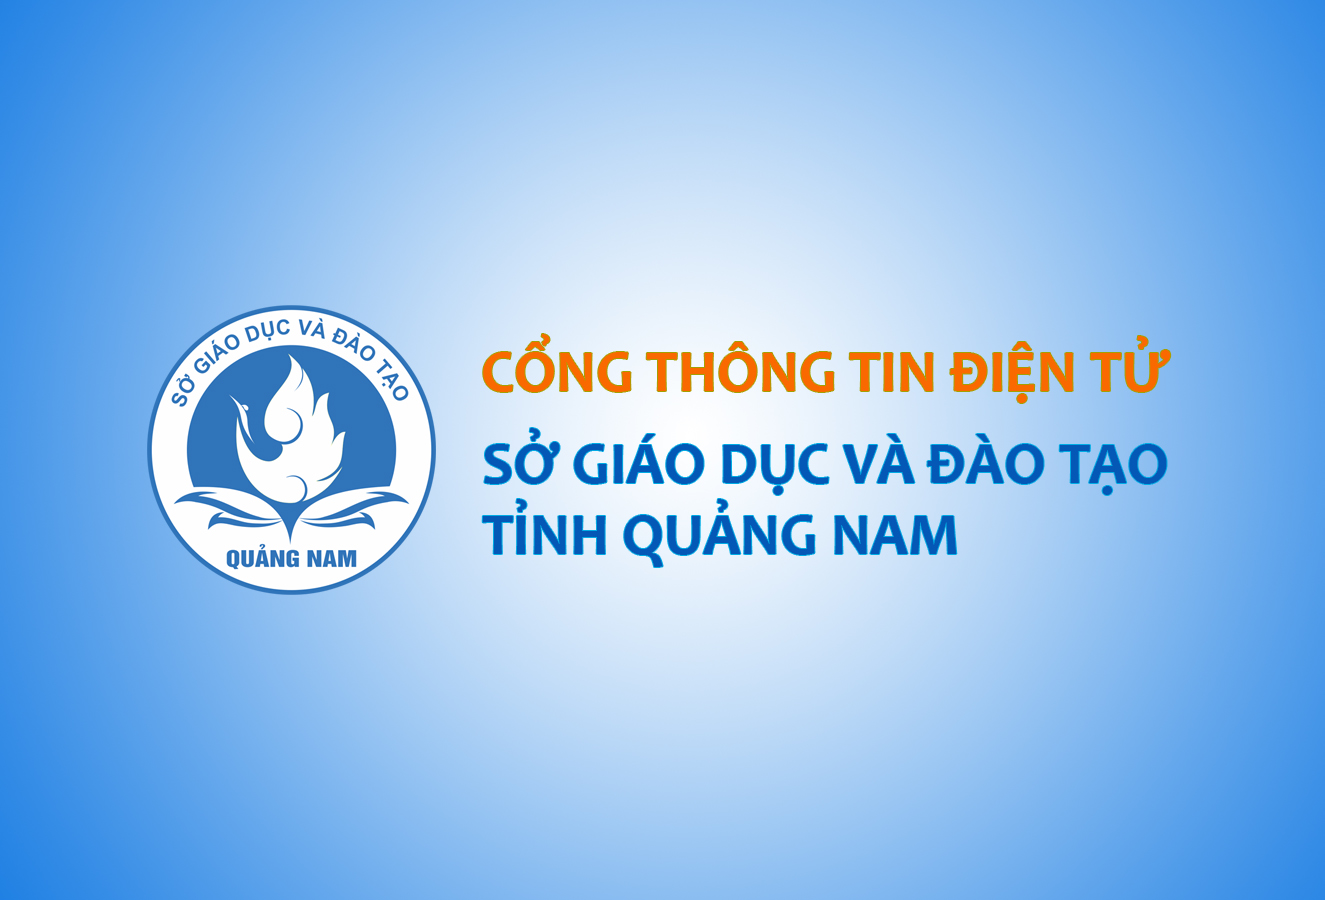 Thông báo kết quả chấm phúc khảo bài thi Kỳ tuyển dụng viên chức GDĐT tỉnh Quảng Nam năm 2021